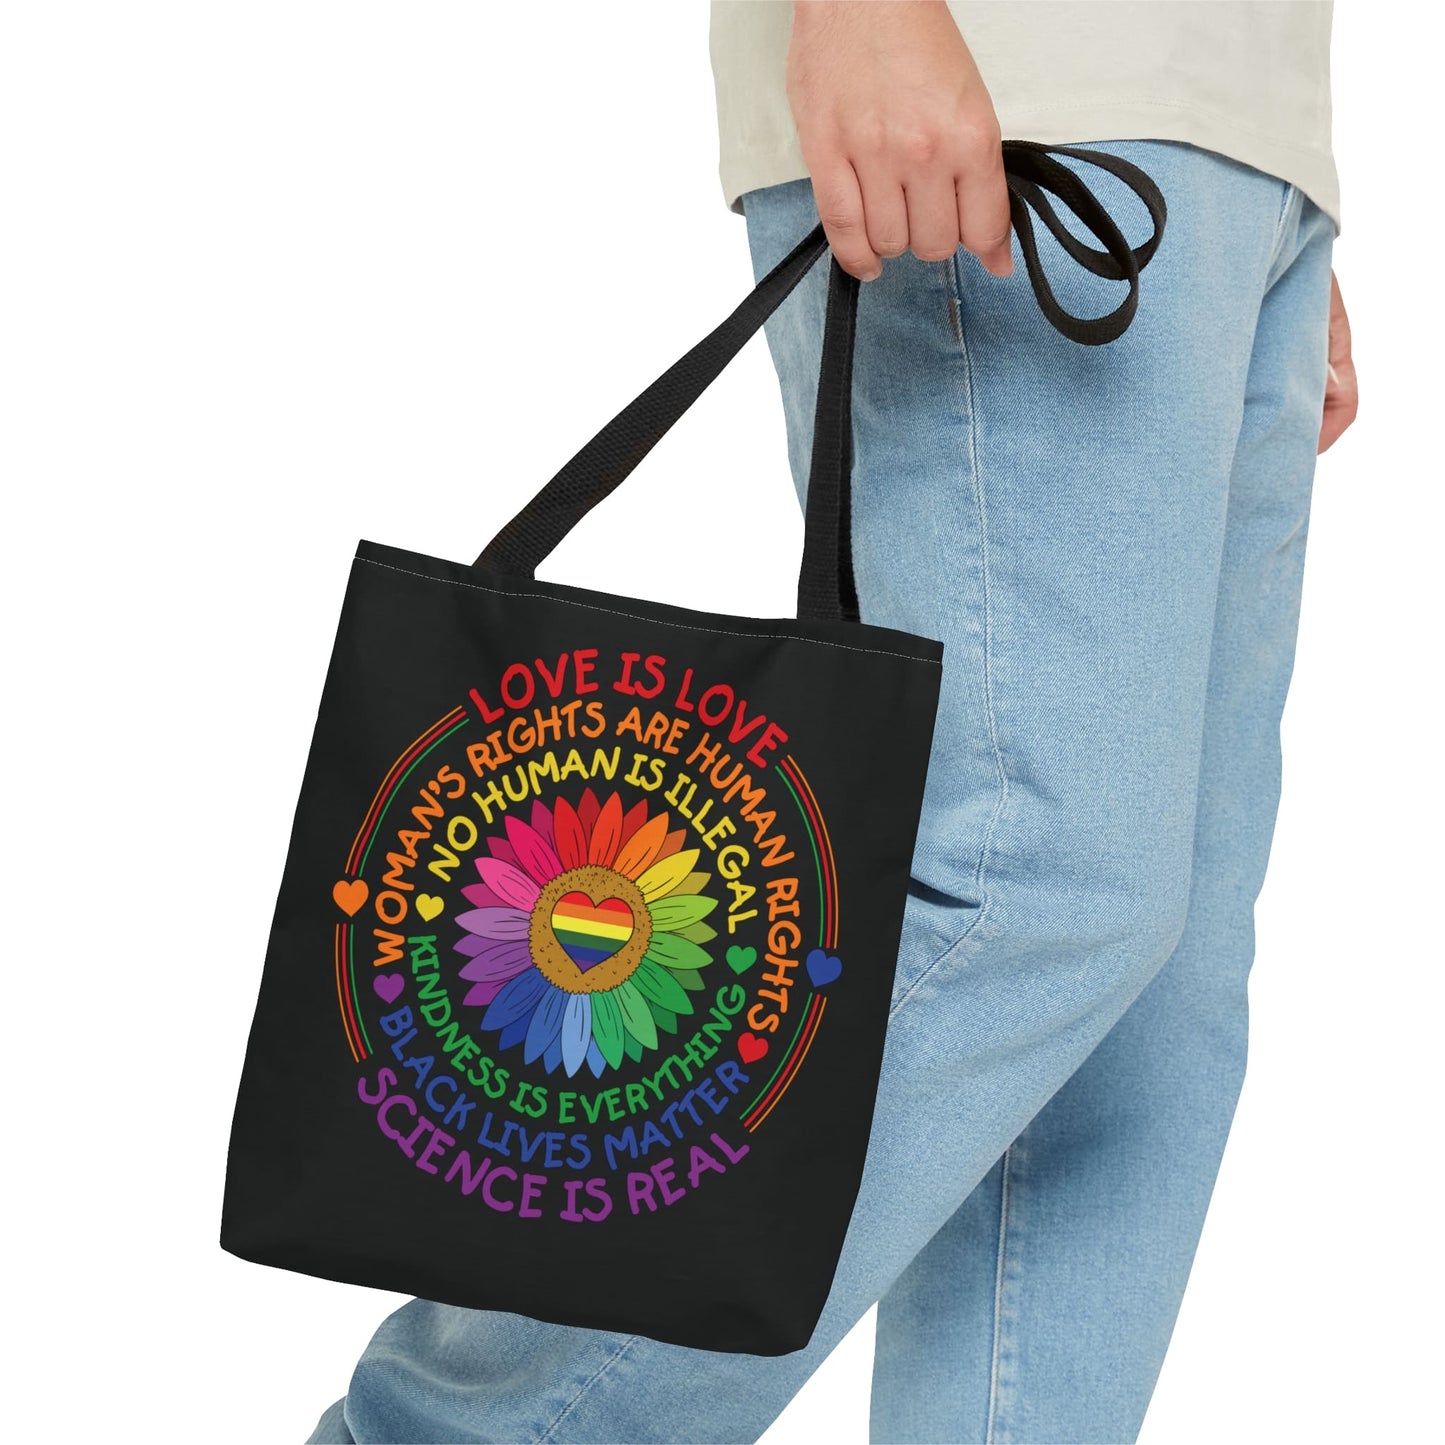 LGBTQ pride tote bag, human rights bag, small